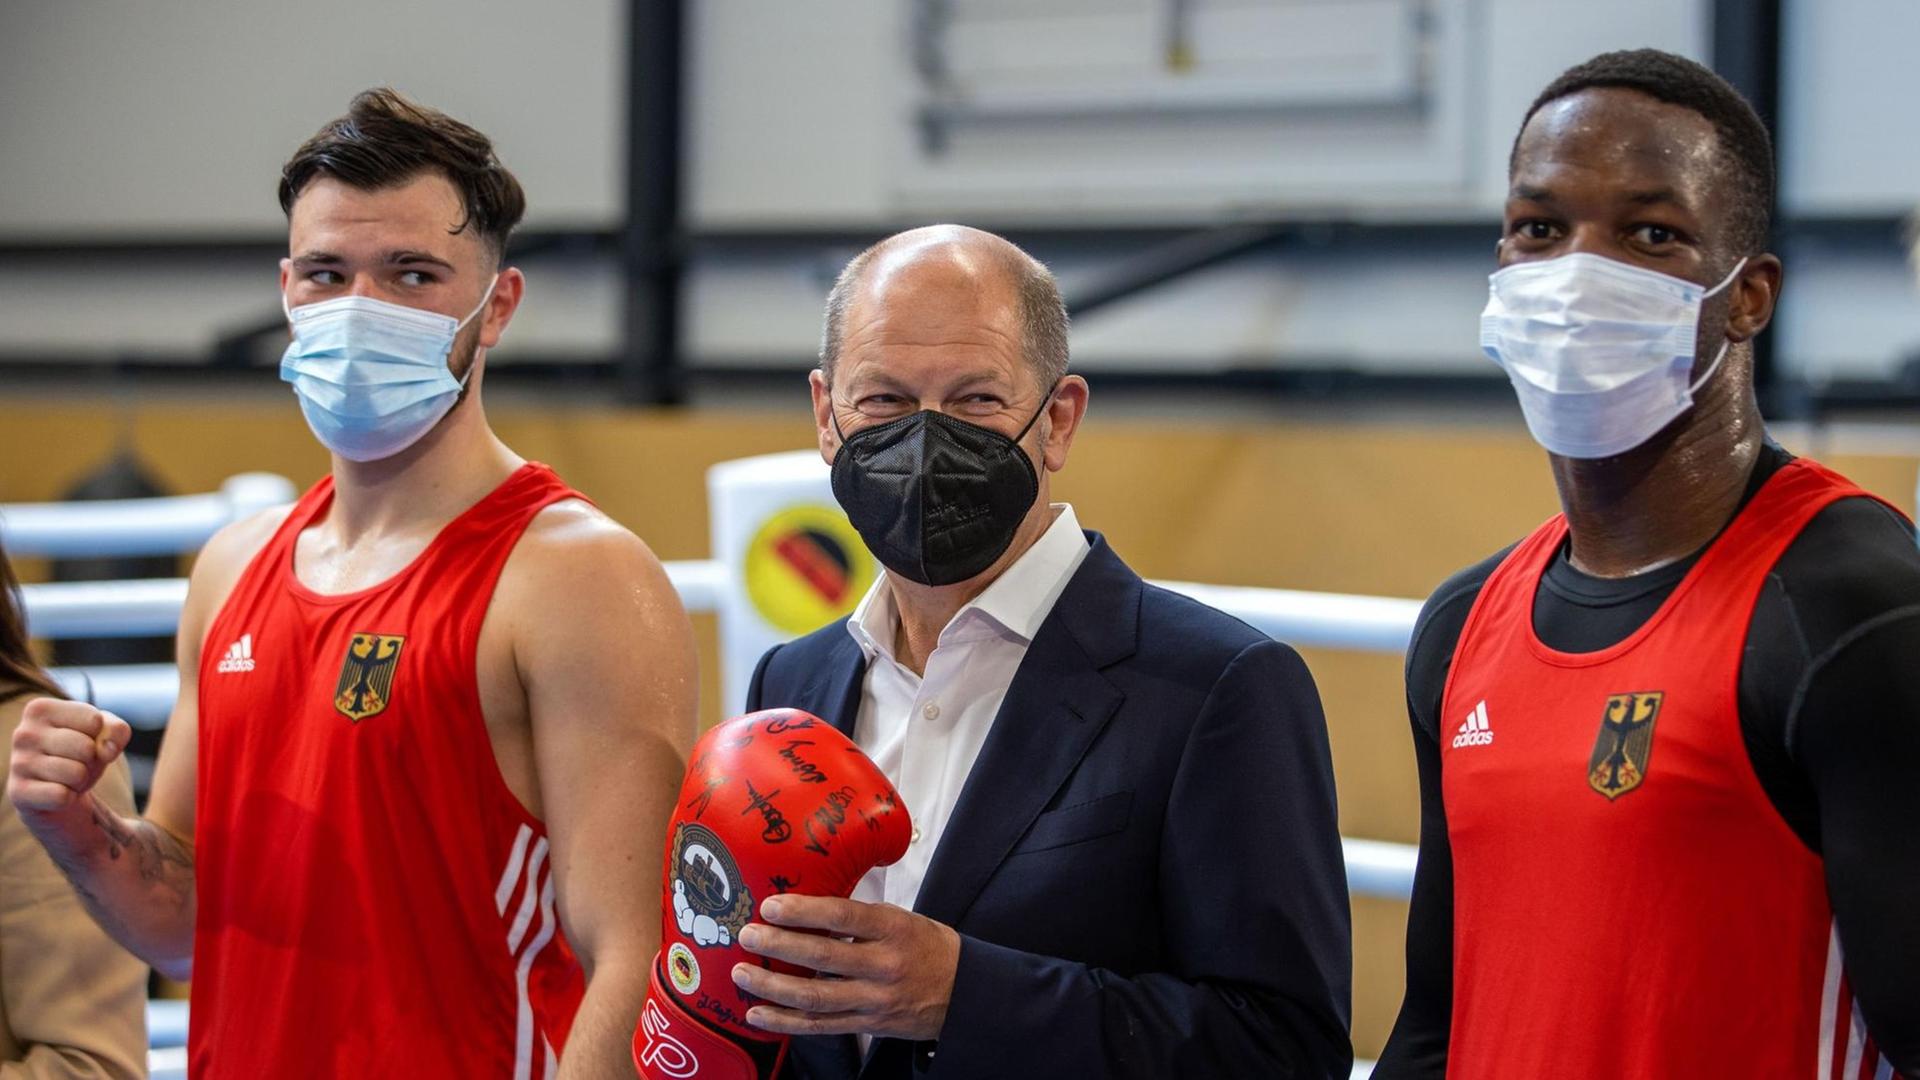 Olaf Scholz, Kanzlerkandidat der SPD für die Bundestagswahl, steht mit einem Boxhandschuh beim Besuch des Boxclub Traktor Schwerin im Boxring zwischen den Boxern Kevin Boakye-Schumann (r) und Deniel Krotter (l).